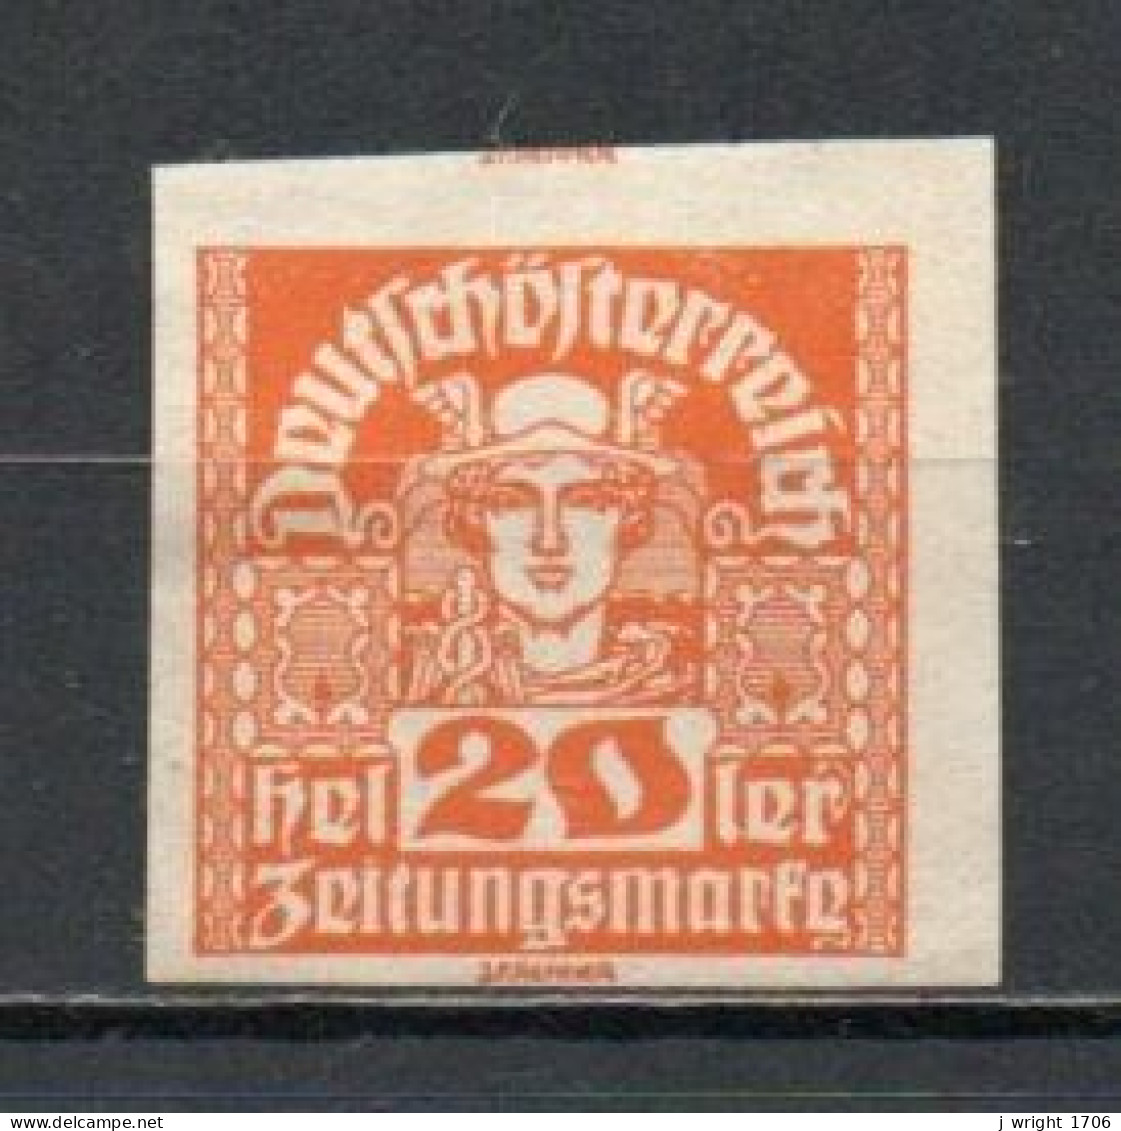 Austria, 1921, Mercury/White Paper, 20h, UNUSED NO GUM - Newspapers